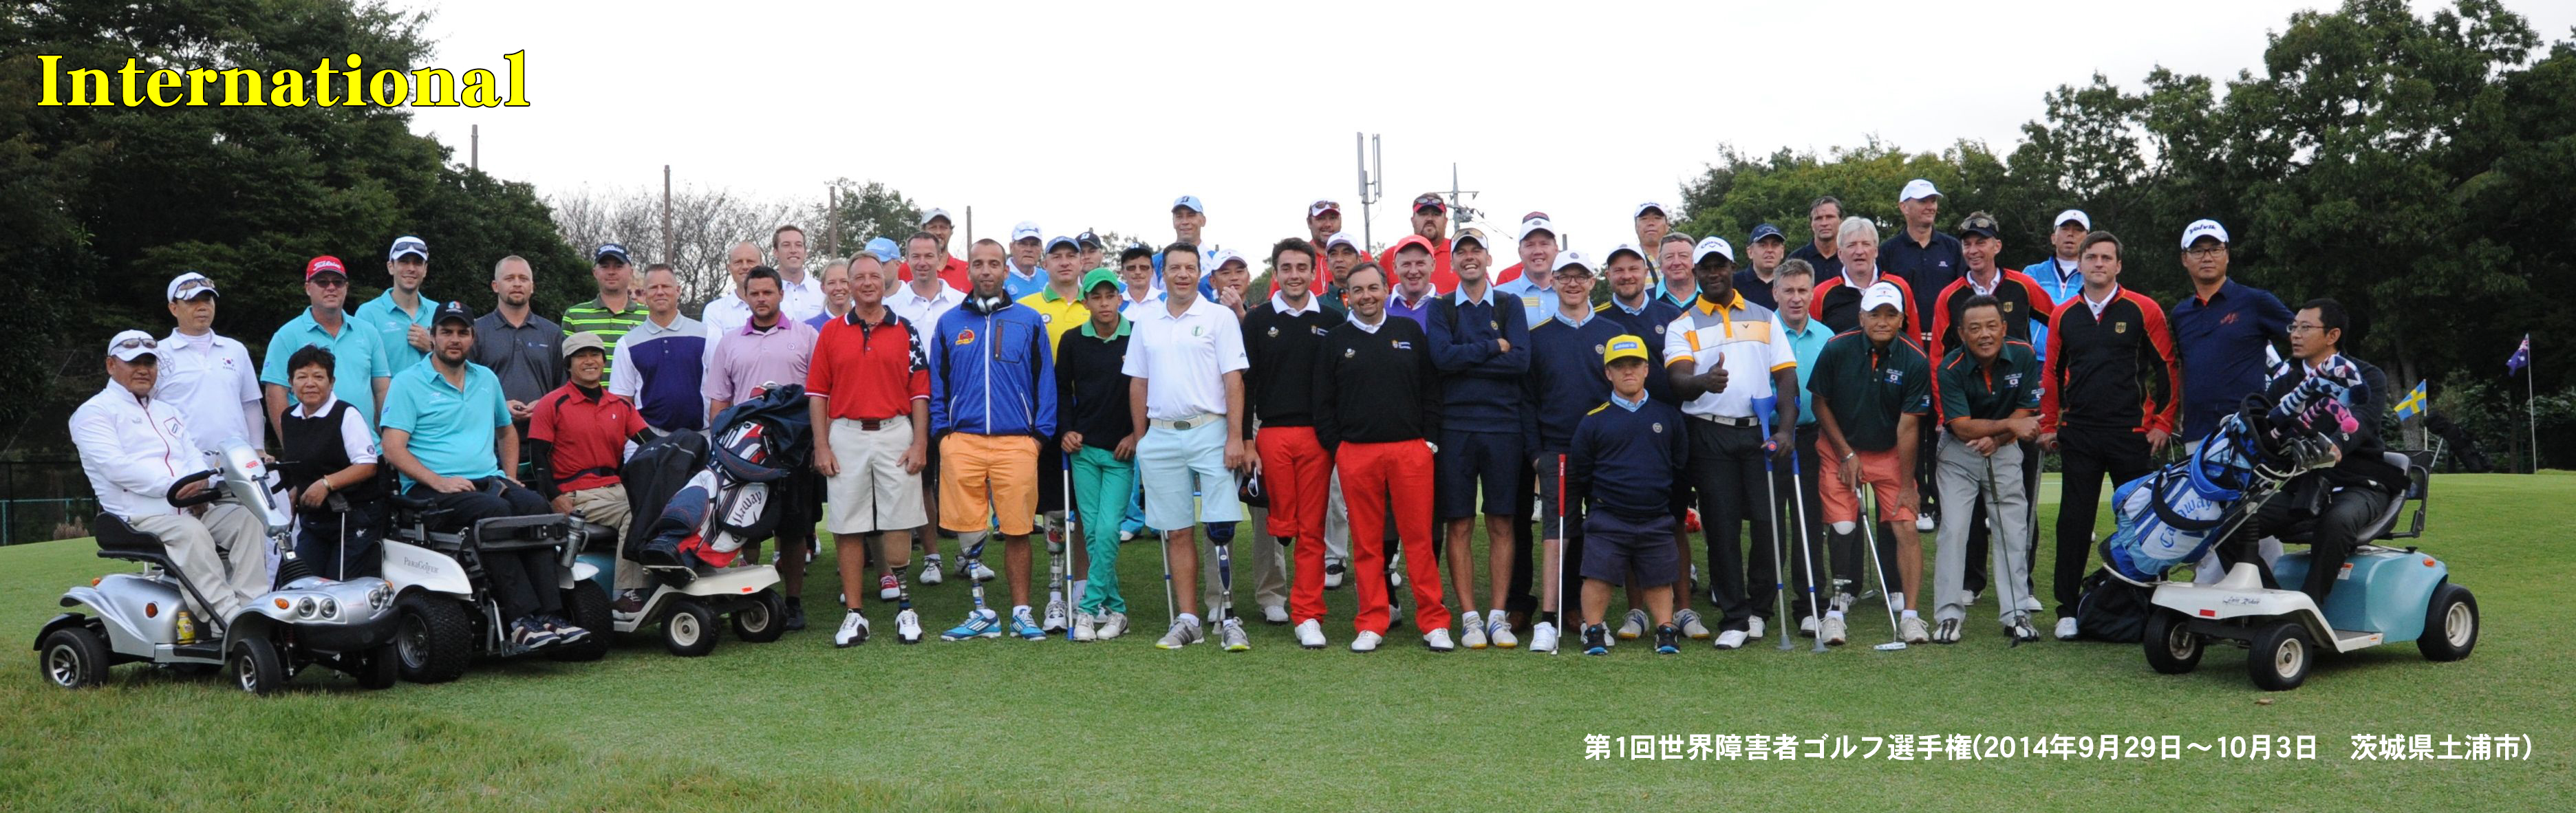 世界障害者ゴルフ選手権 Npo法人 日本障害者ゴルフ協会